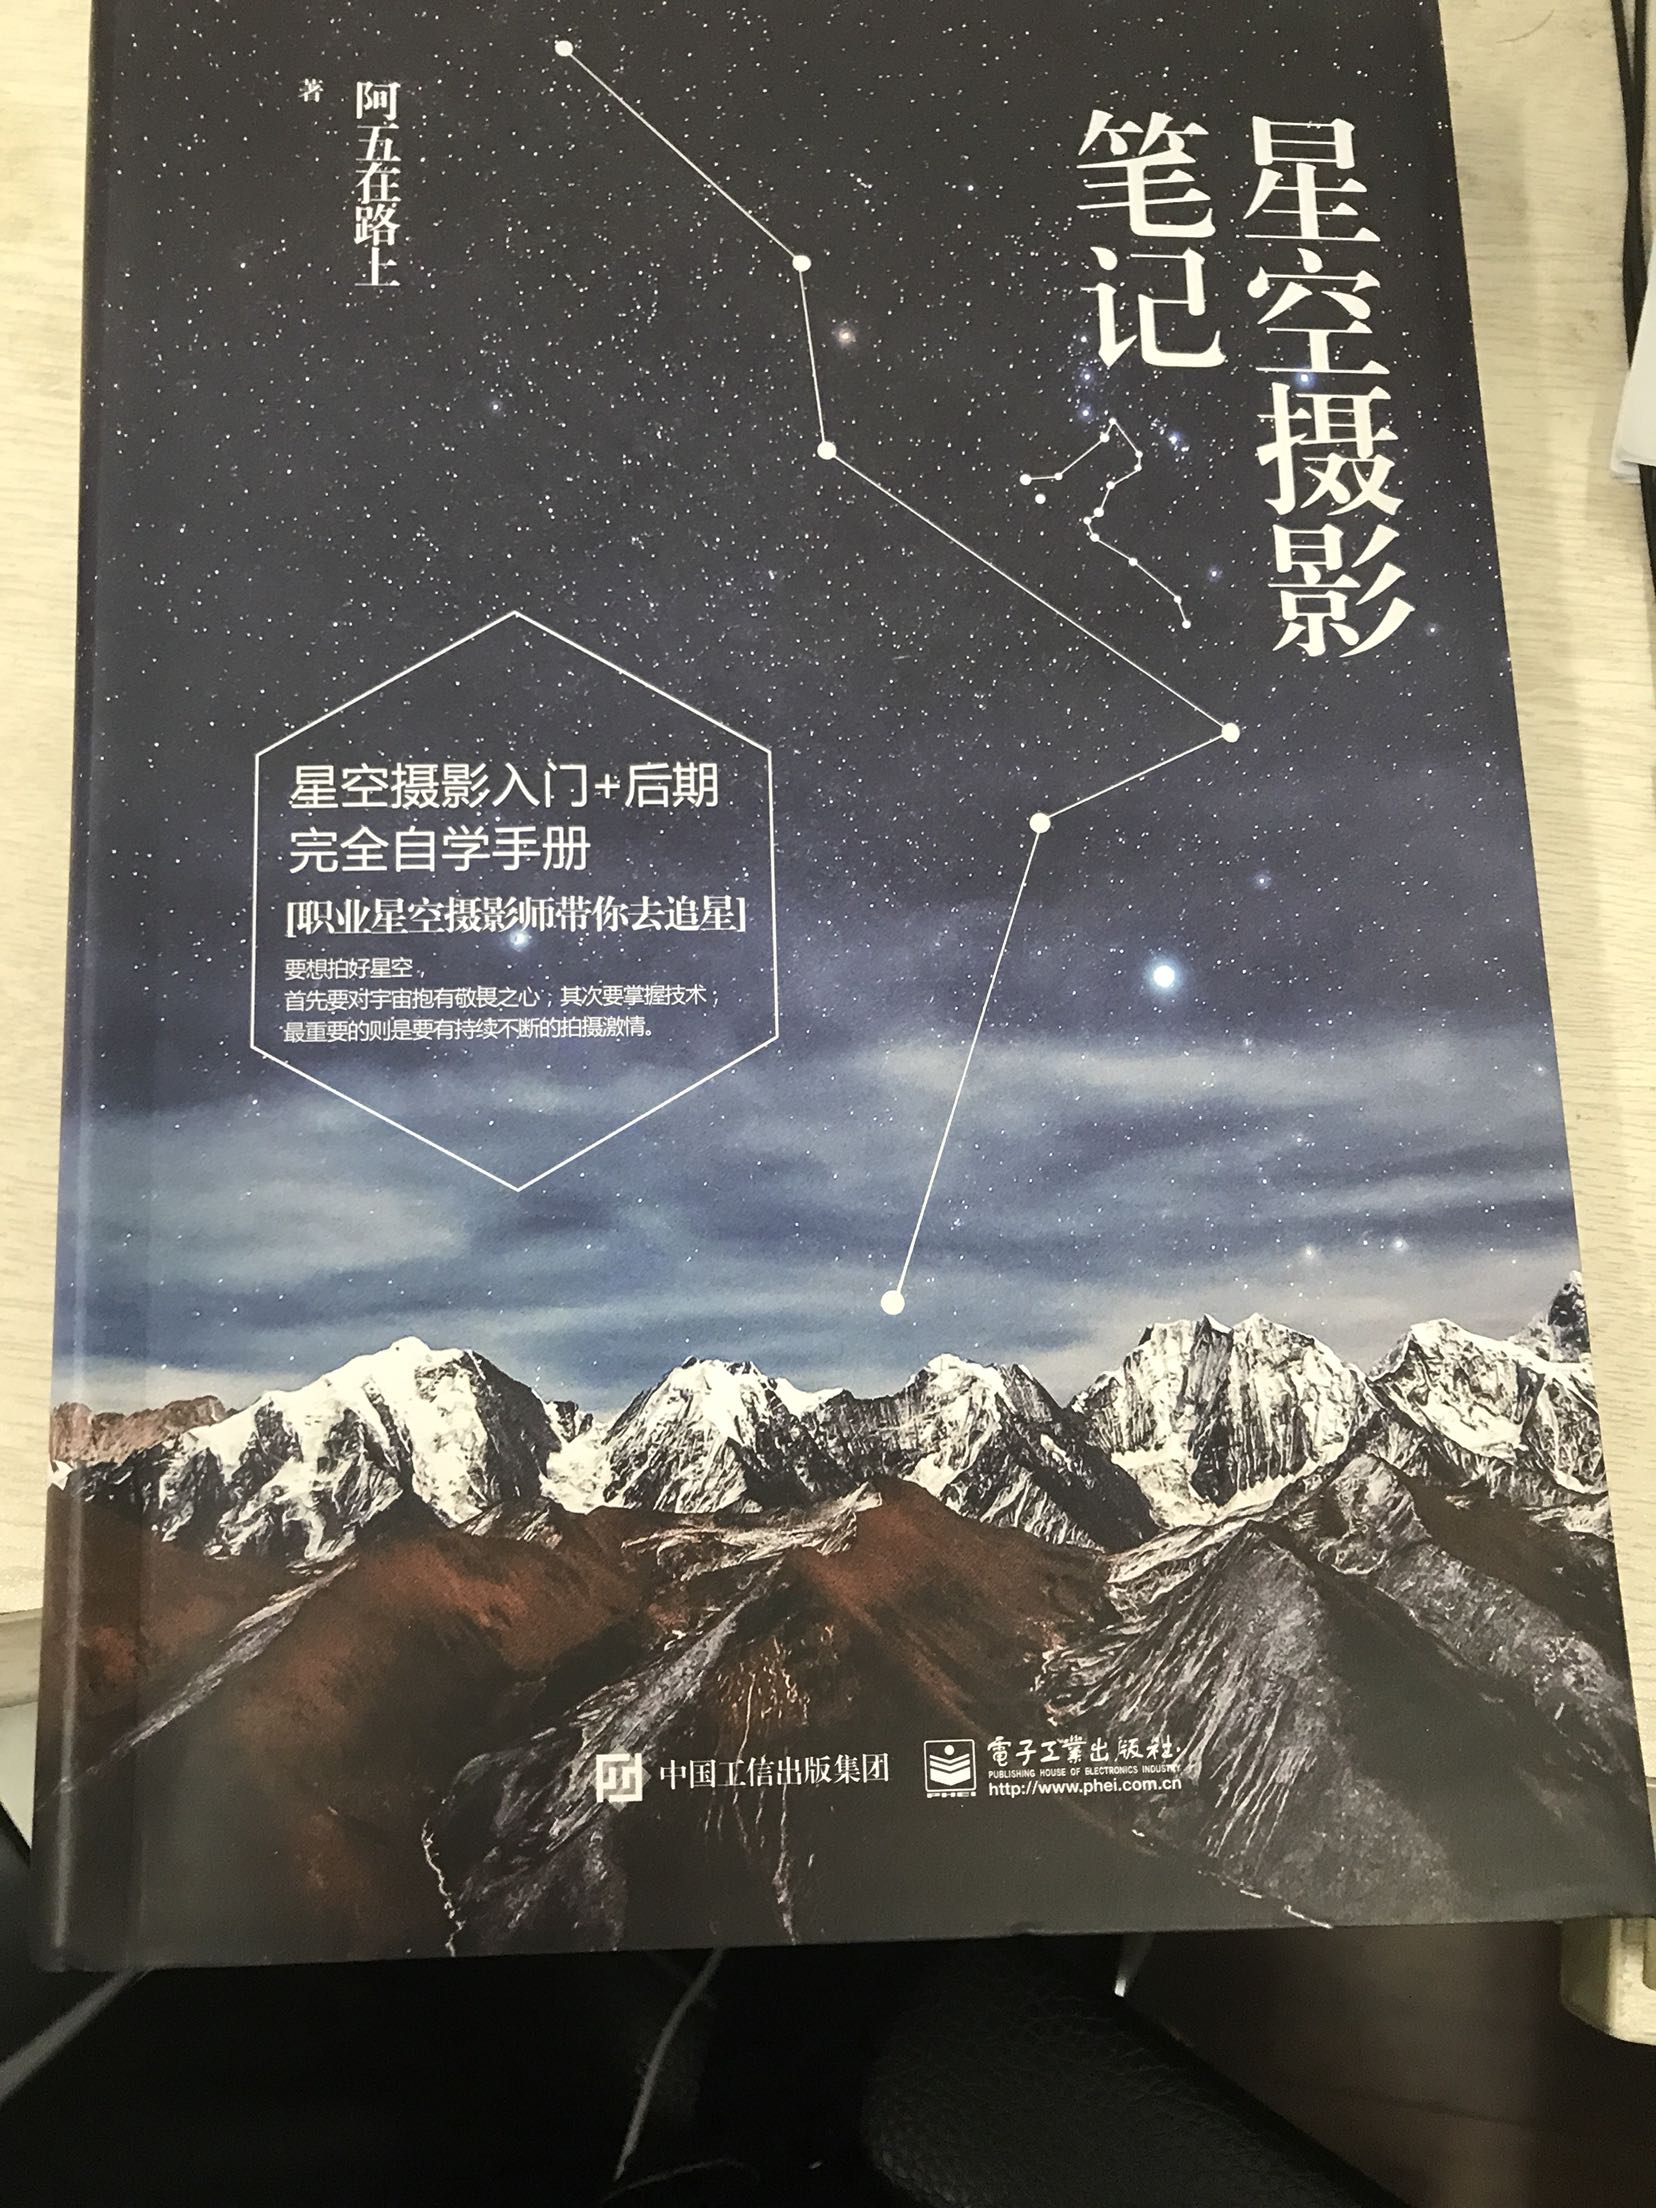 不错的一本书，对星空摄影的方方面面都做了详细的讲解，很有帮助